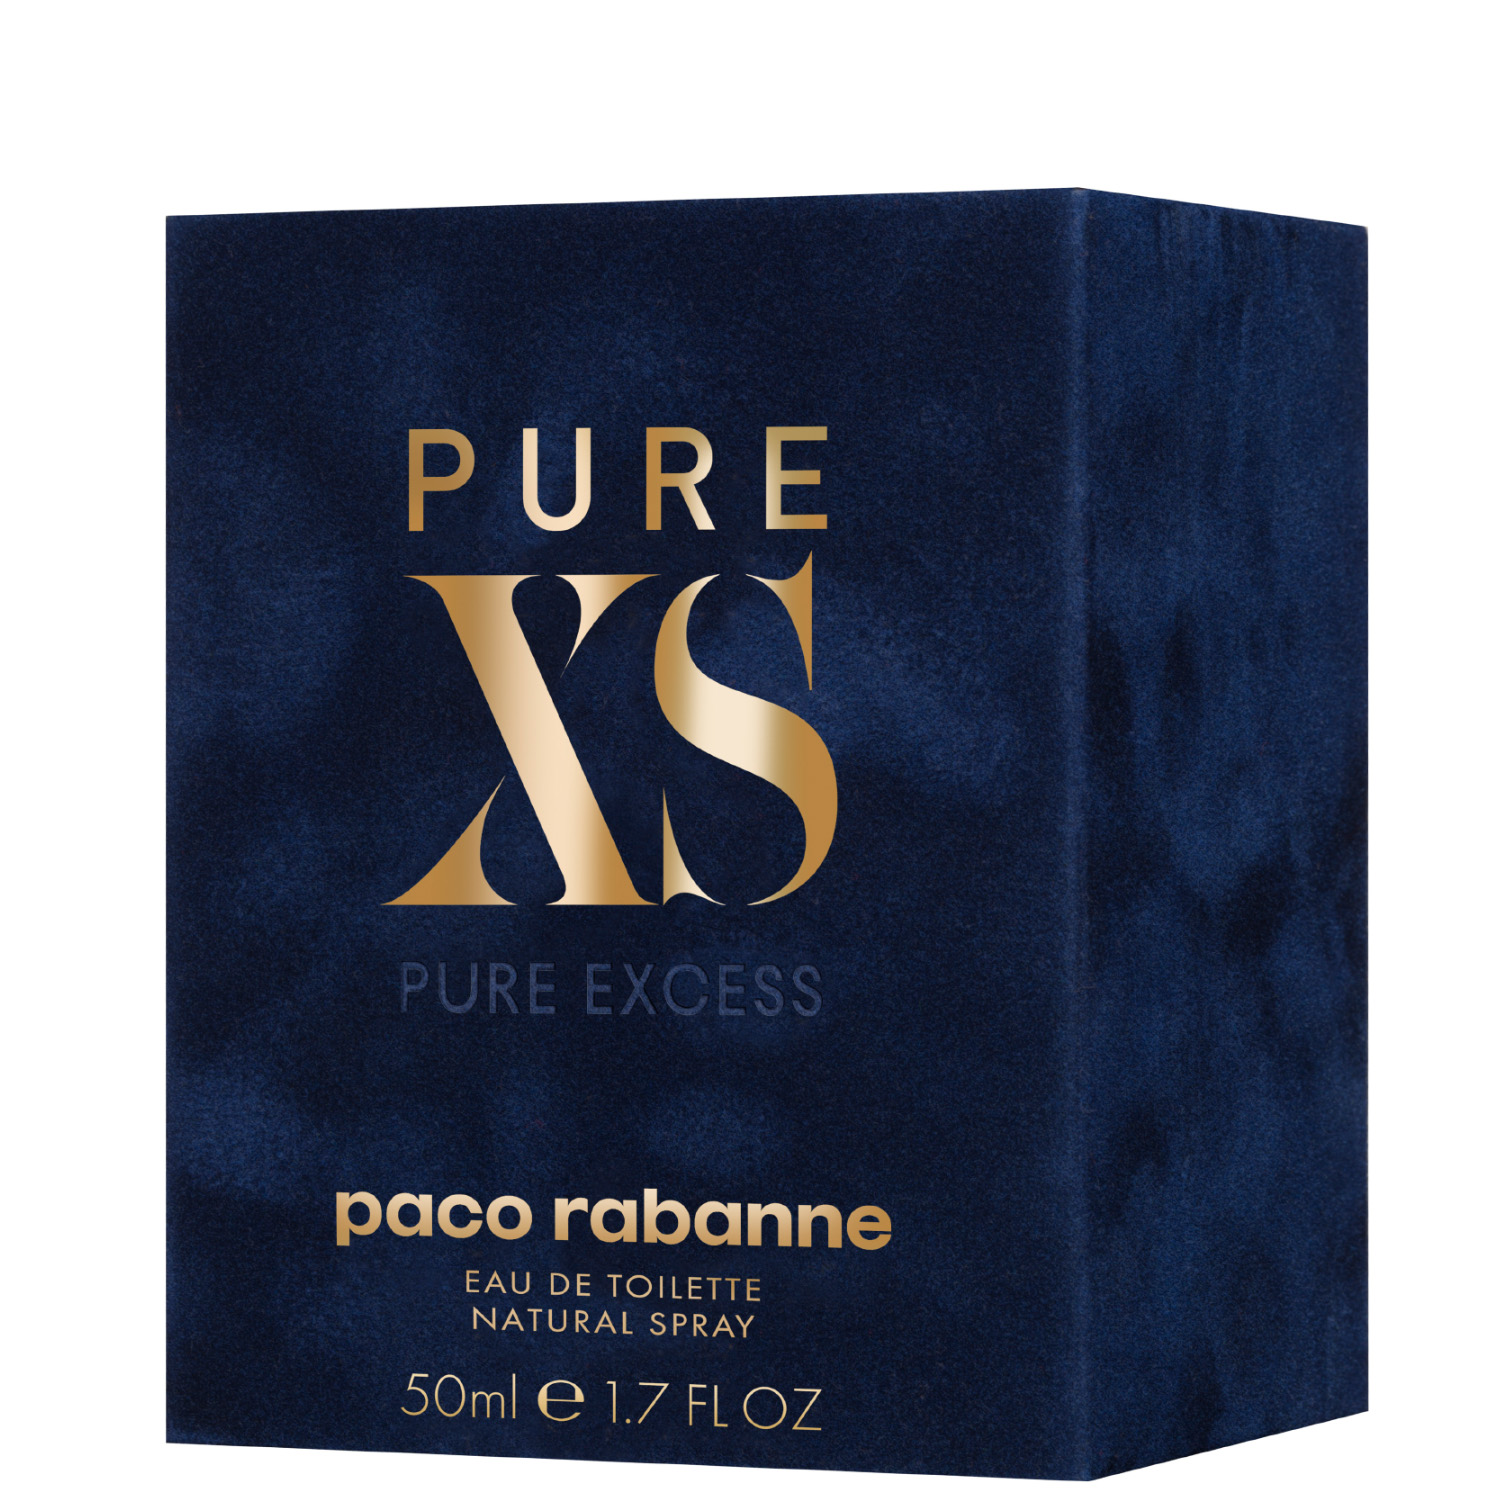 Paco Rabanne Pure XS Eau de Toilette 50ml